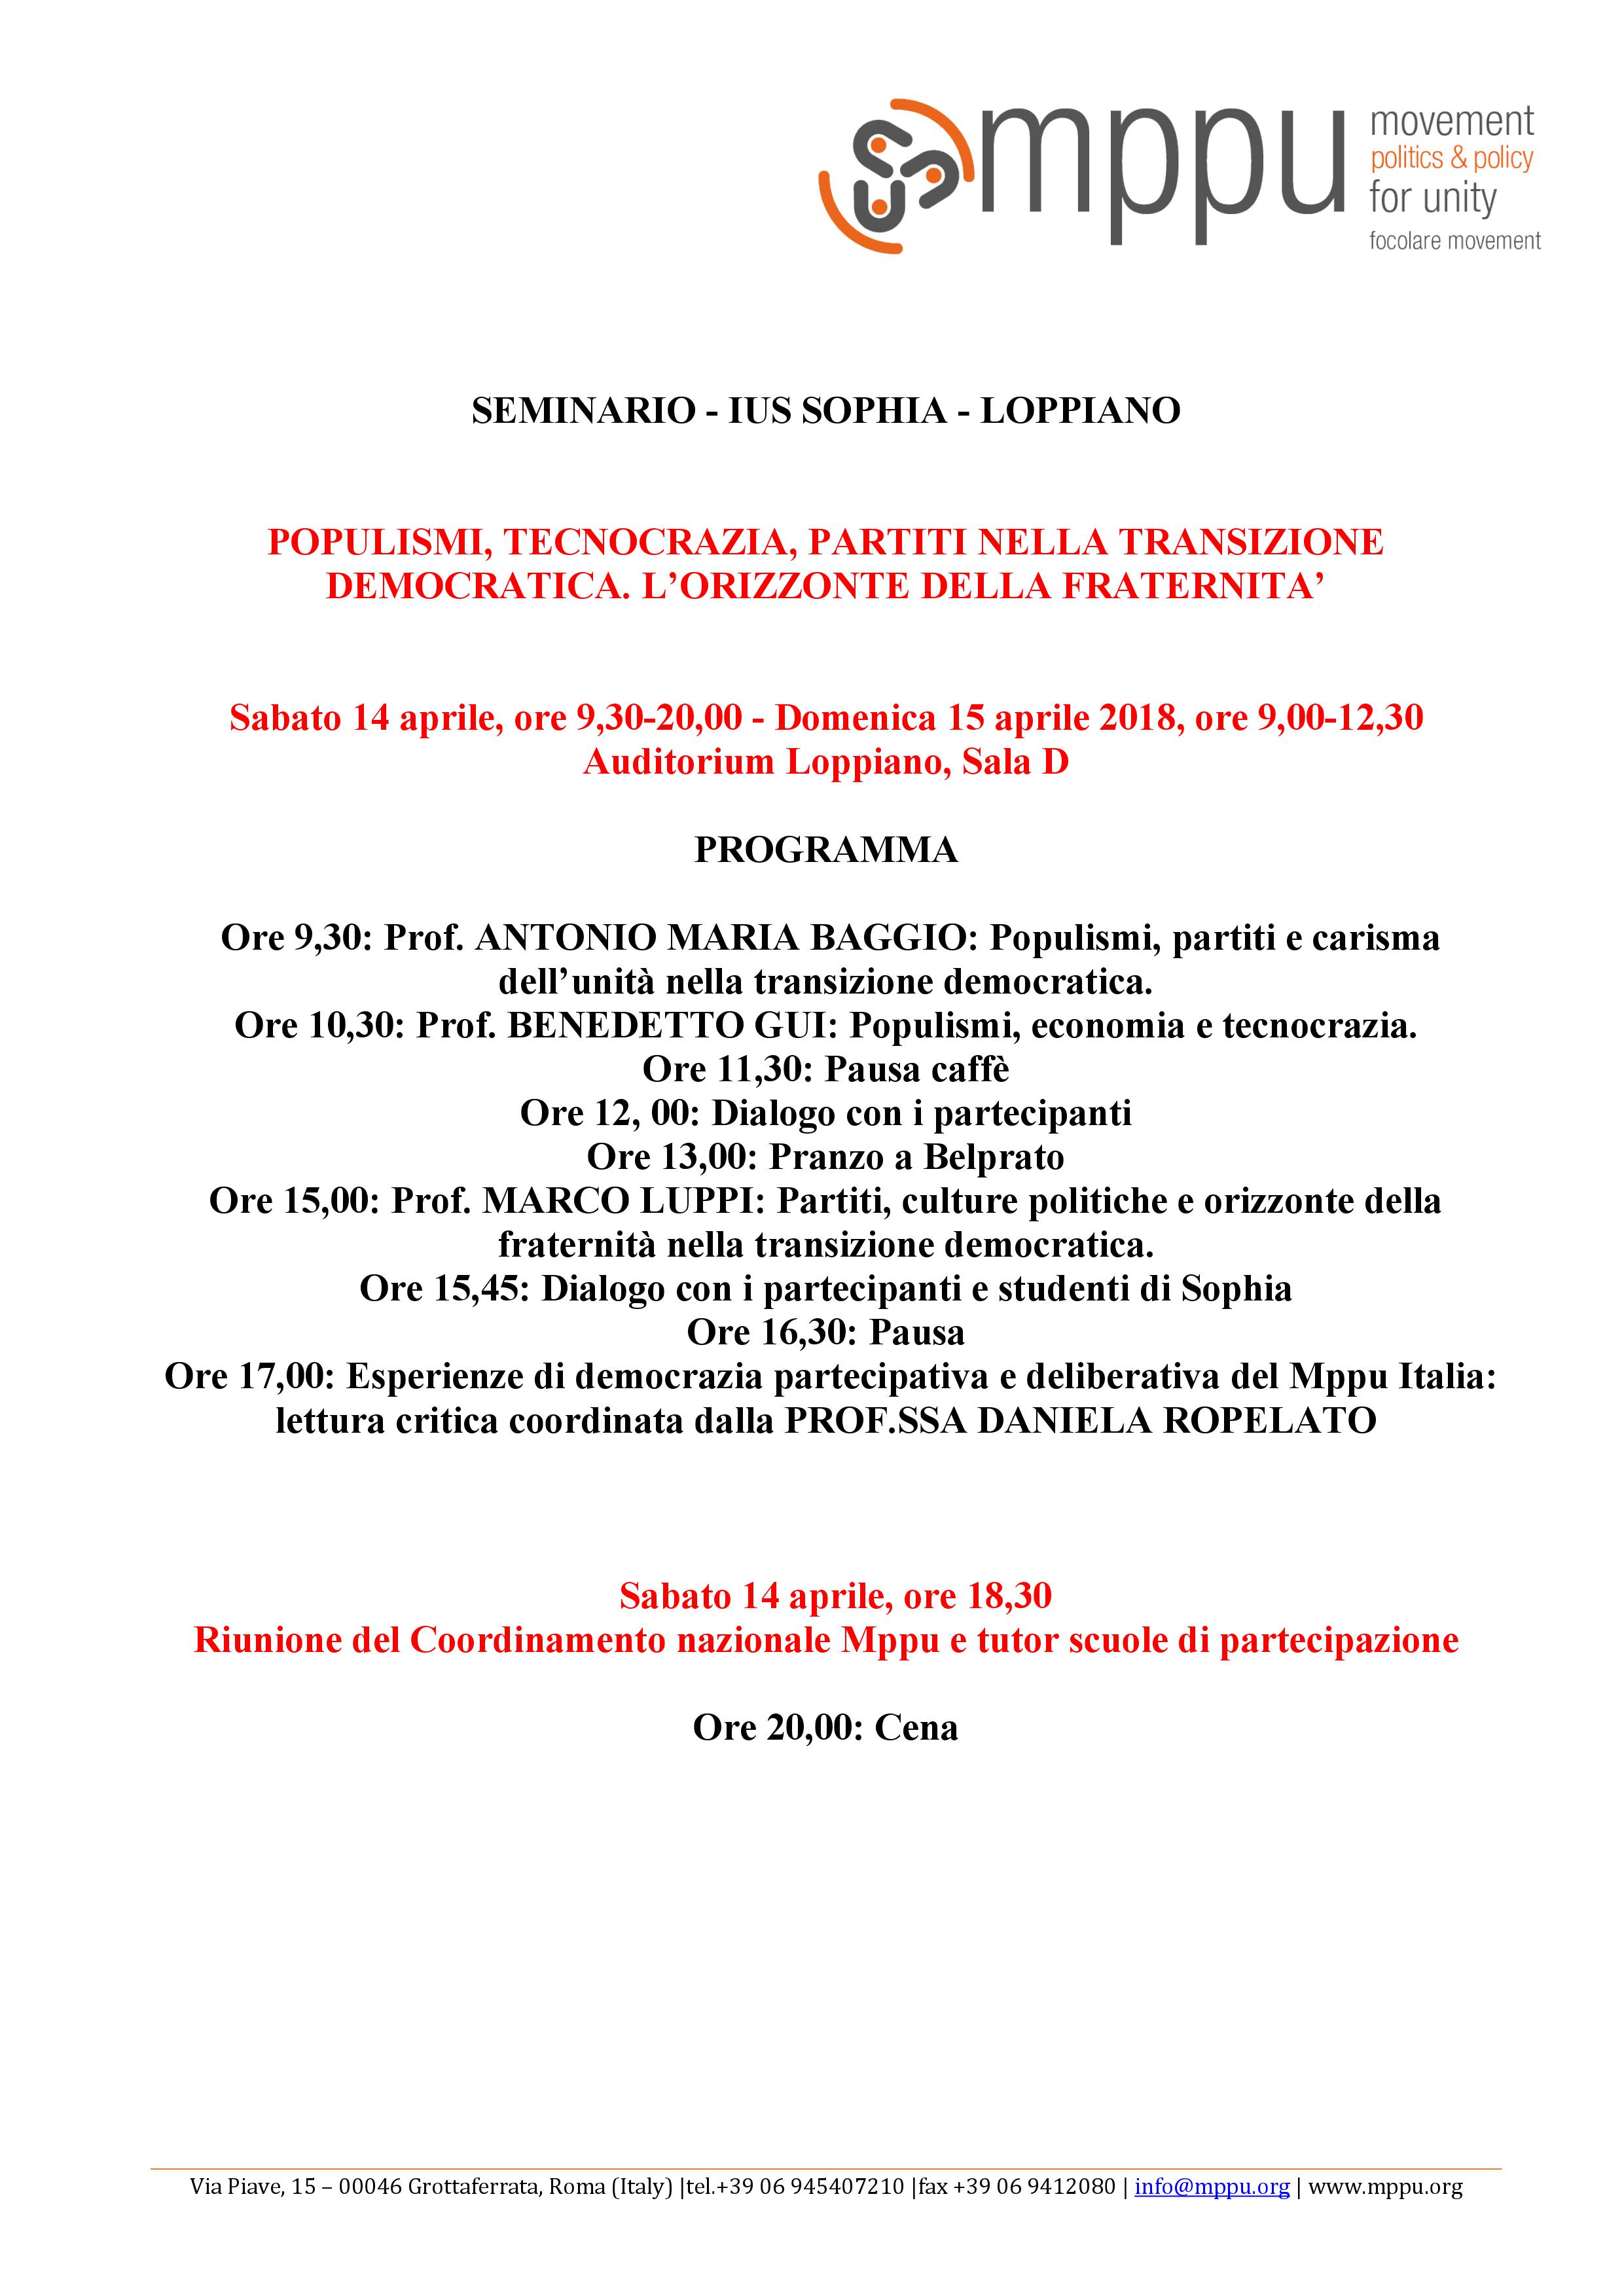 Loppiano, Seminario Nazionale Mppu - IUS Sophia